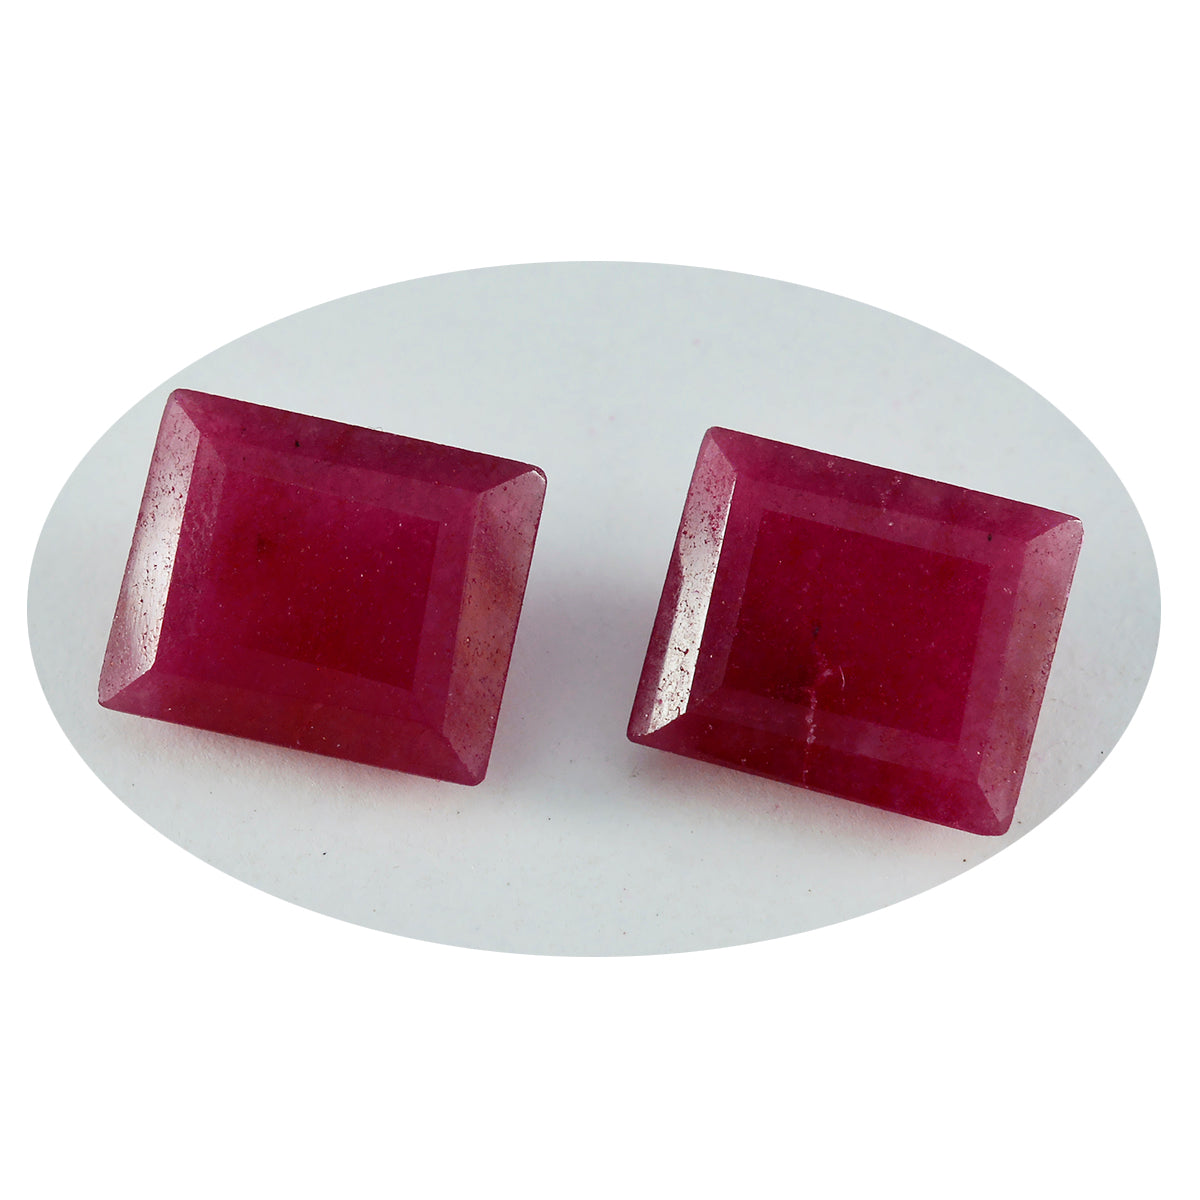 Riyogems 1PC natuurlijke rode jaspis gefacetteerd 7x9 mm achthoekige vorm mooie kwaliteit edelsteen